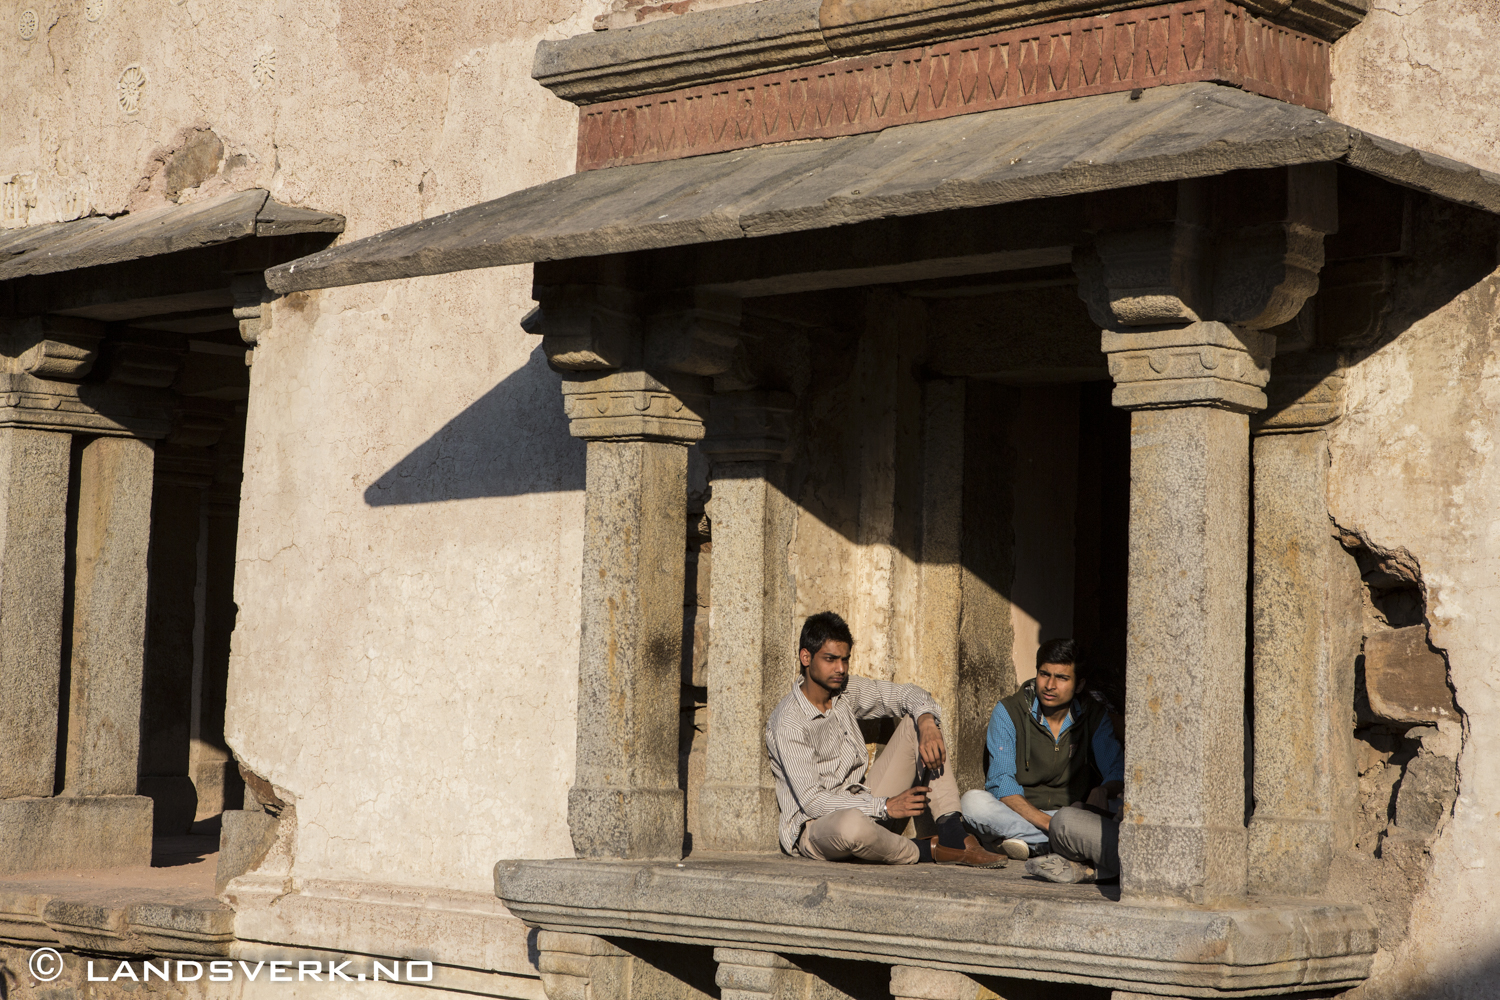 Hauz Khas, South Delhi, India. 

(Canon EOS 5D Mark III / Canon EF 24-70mm f/2.8 L USM)